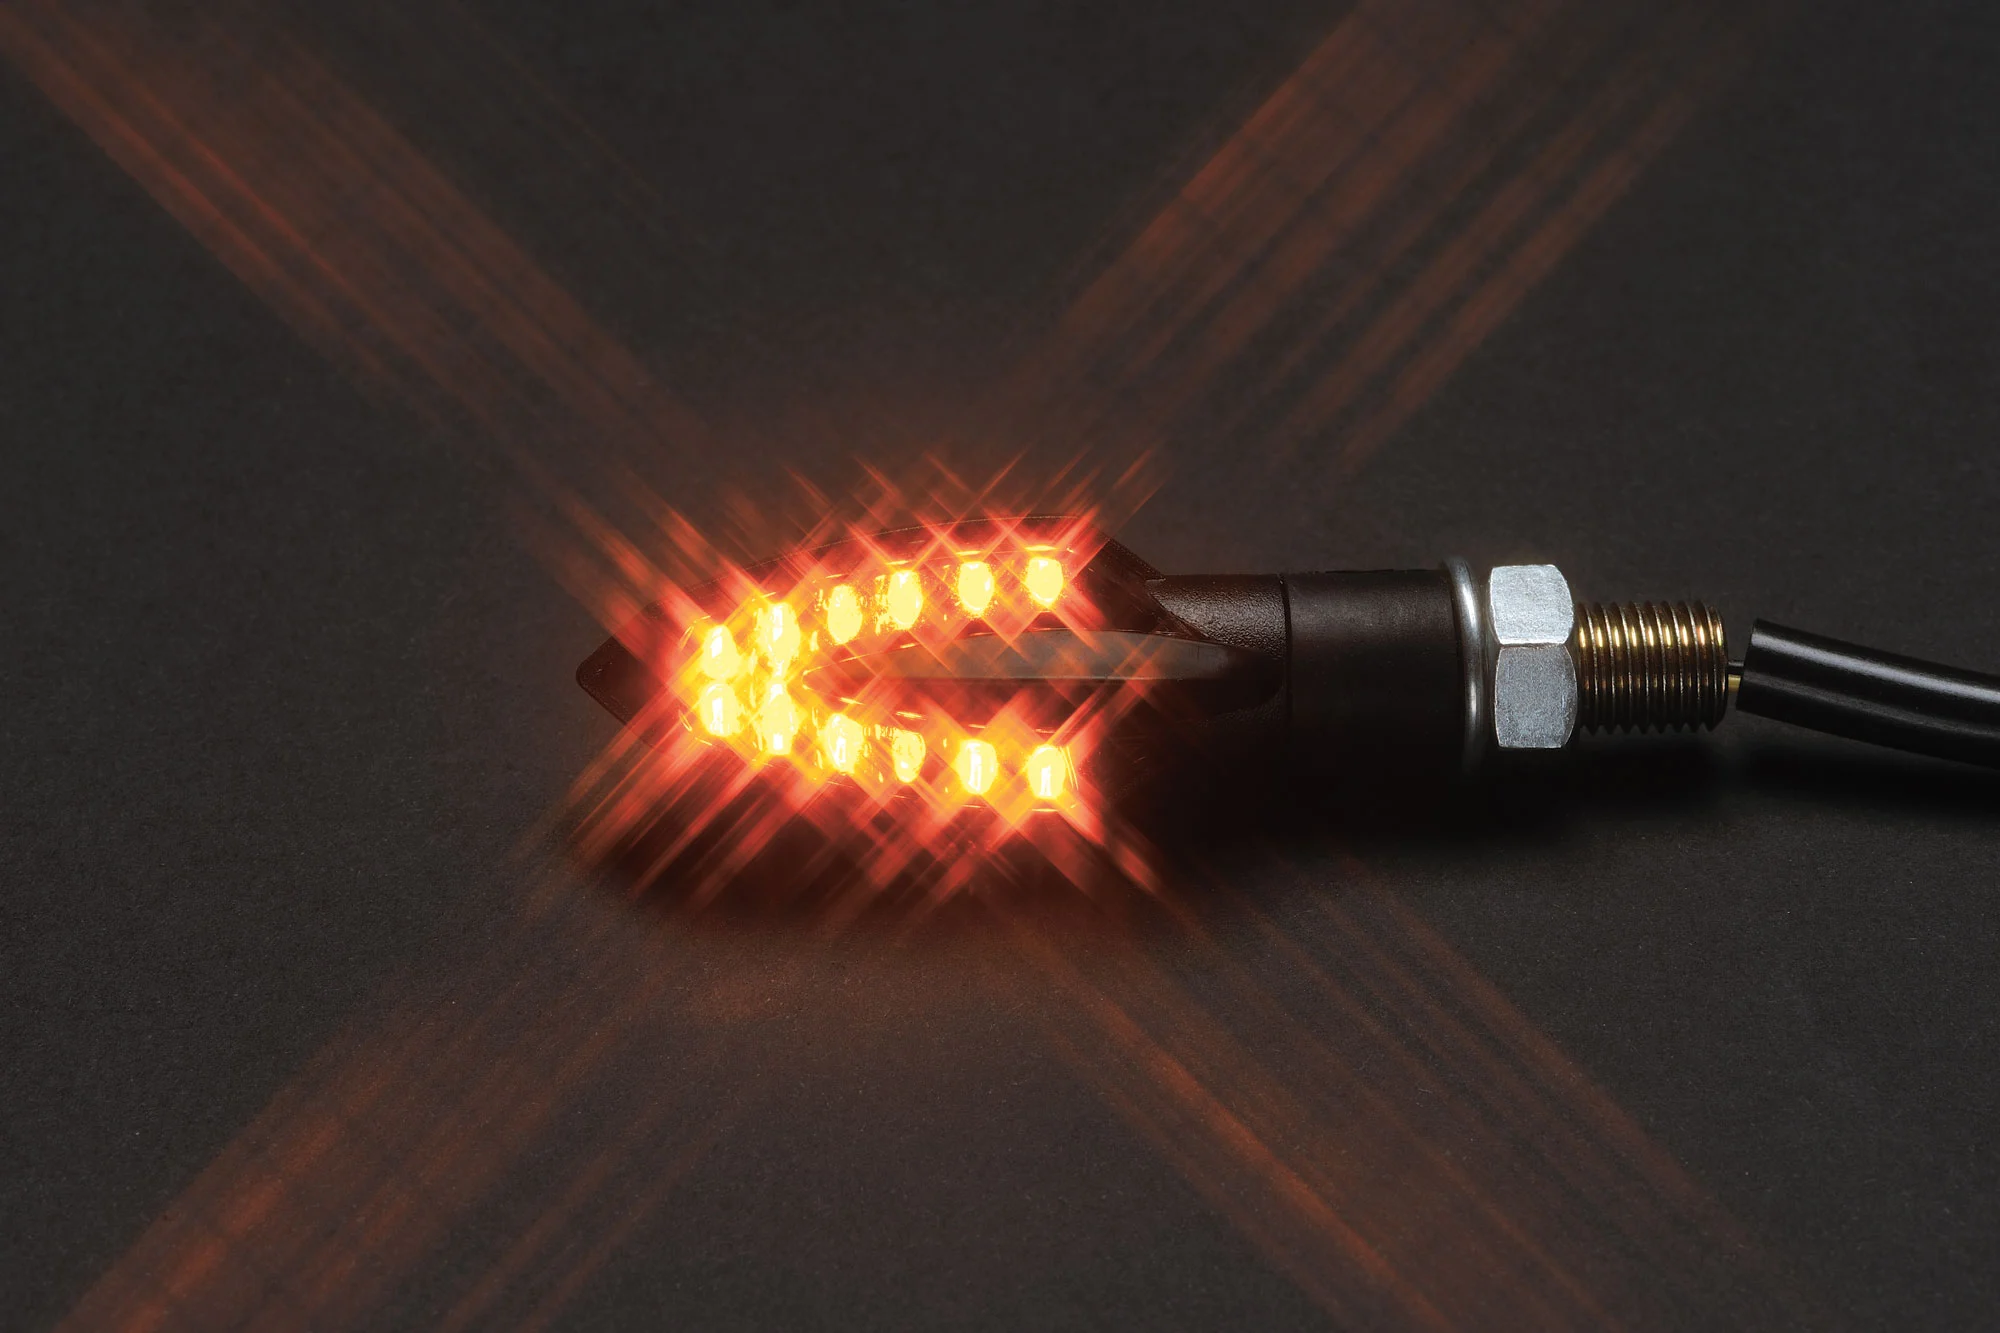 LED Lenkerarmaturen Blinker schwarz getönt 12V Motorrad, LED Blinker, Blinker, Beleuchtung, Universalteile